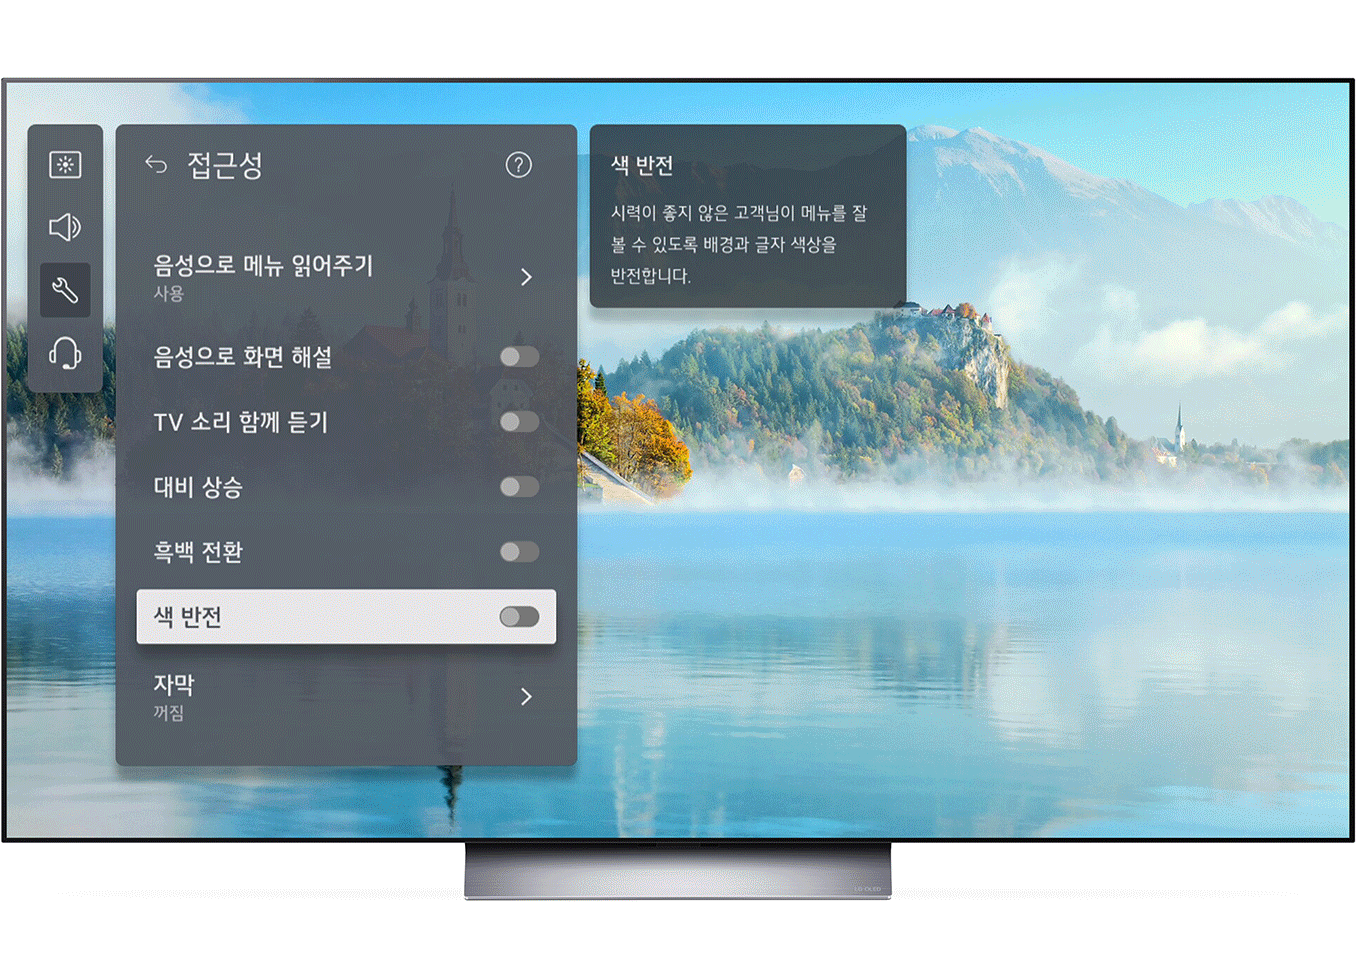 TV 메뉴의 배경과 글자 색상을 반전하여 메뉴의 글자를 좀 더 편하게 읽을 수 있는 이미지영상입니다.